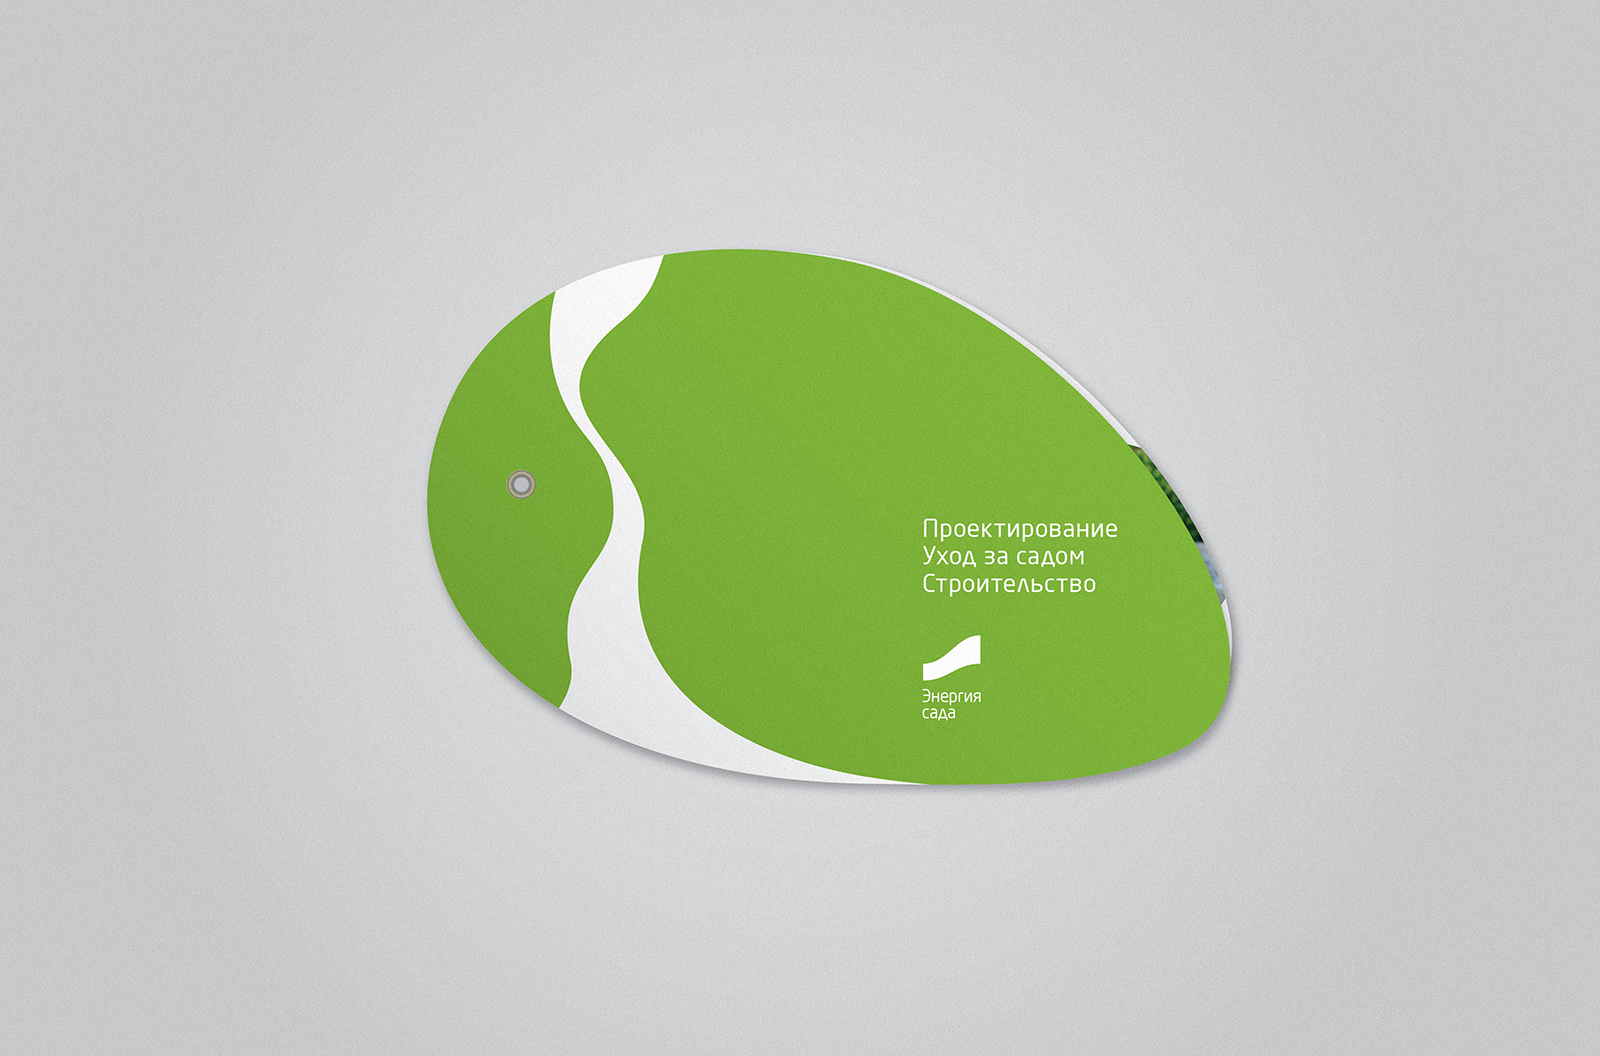 Дизайн и верстка буклета для ландшафтной студии Энергия сада. Ландшафтный брендинг: агентство WeDESIGN | МыДИЗАЙН